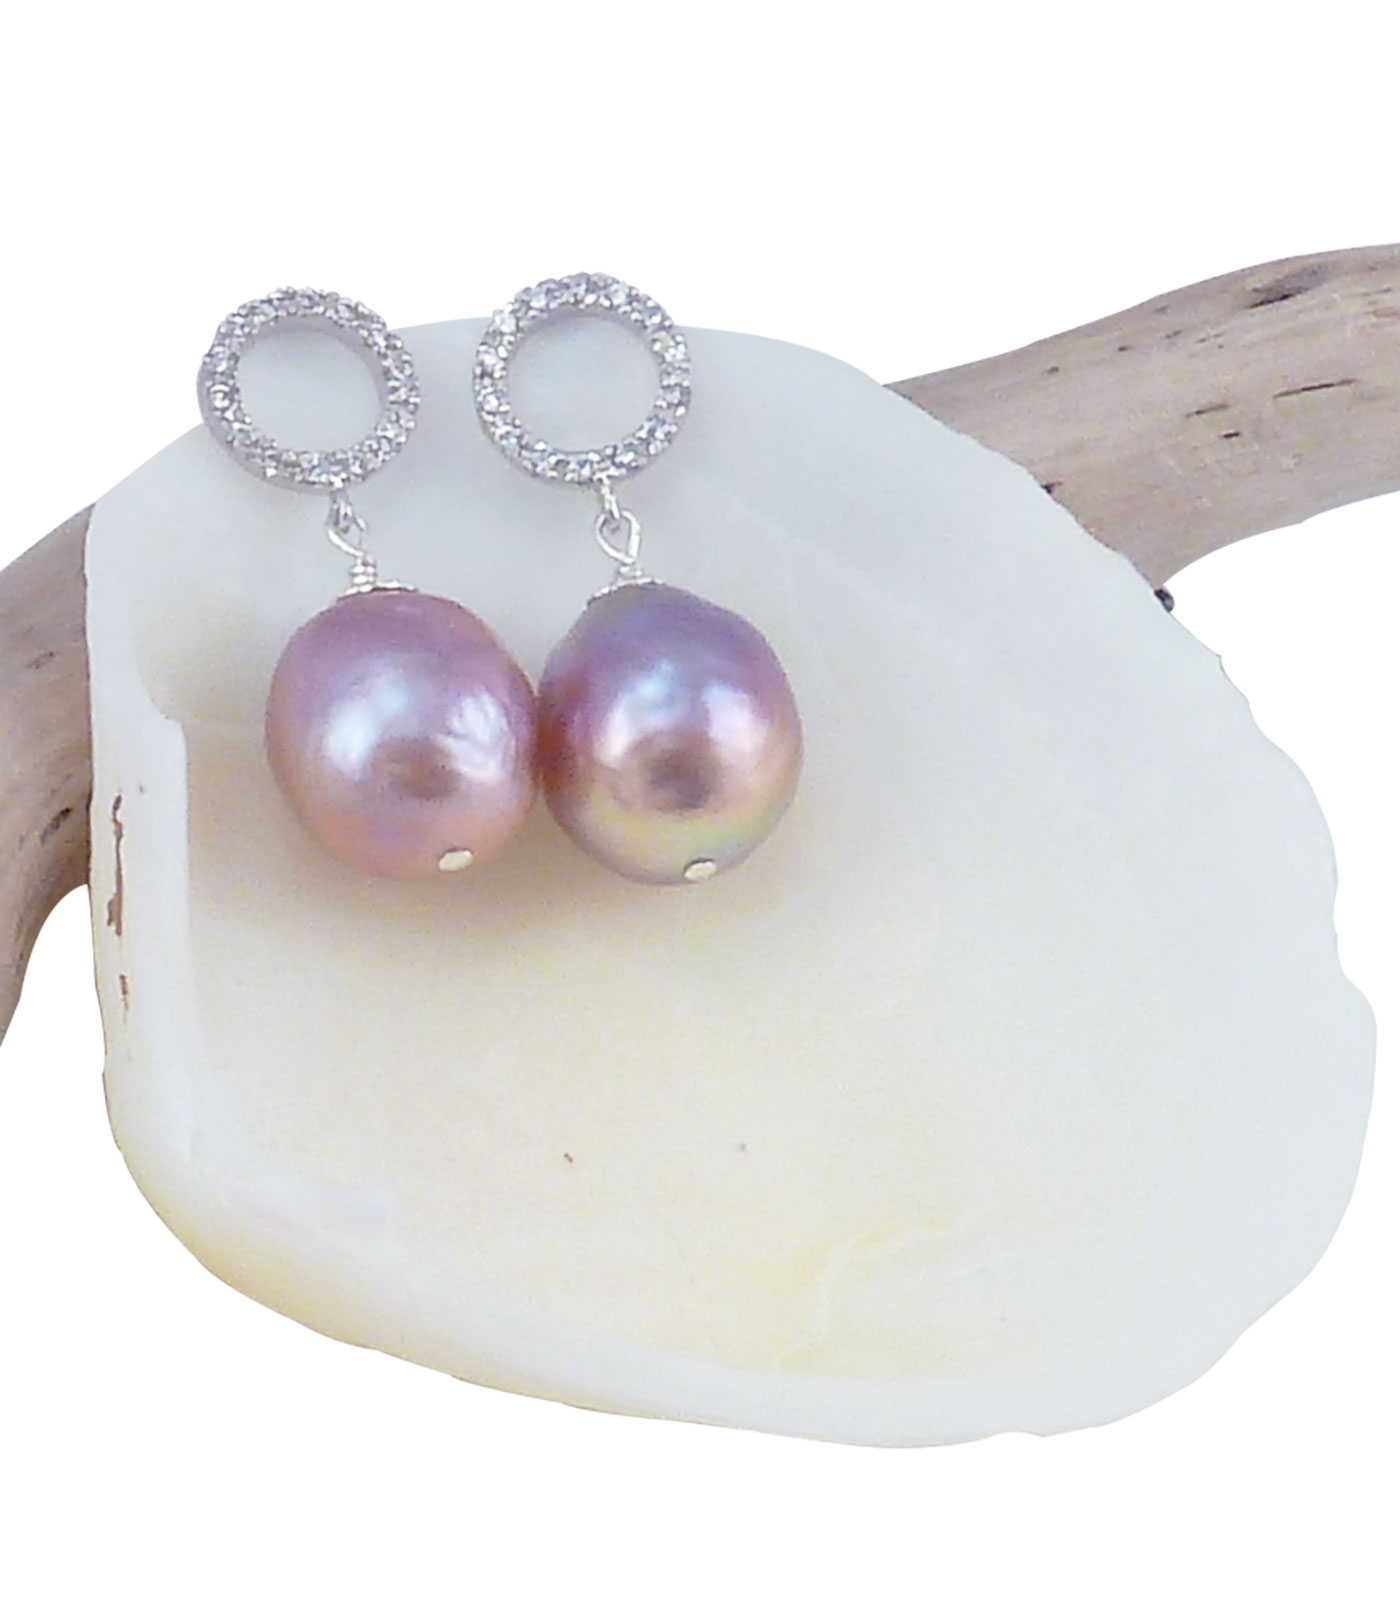 Pearl earrings lavender Chinese Kasumi pearls